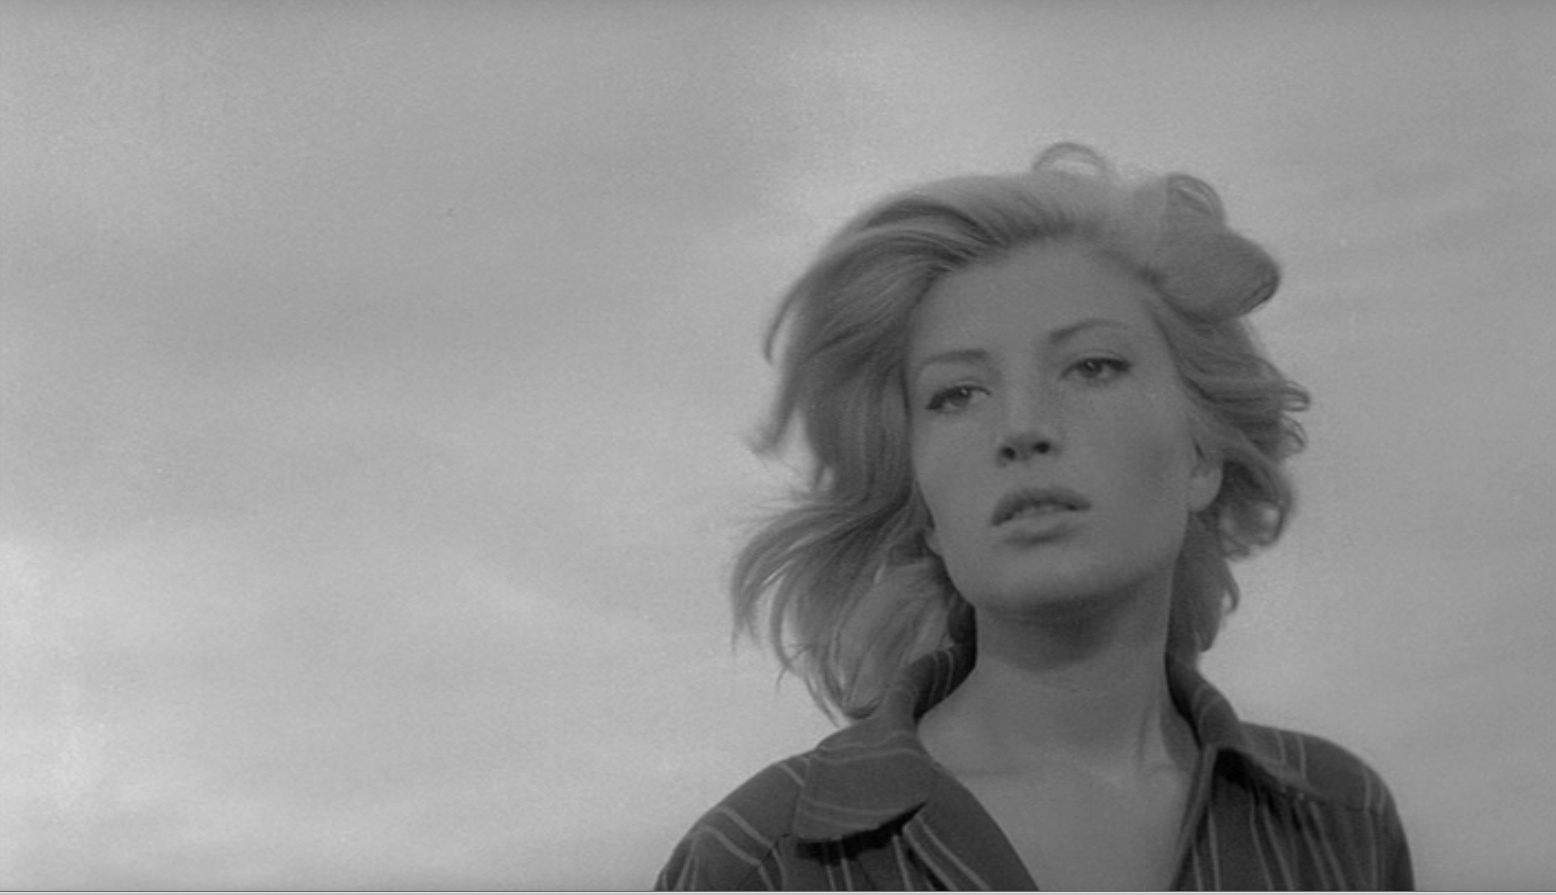 1001: A FILM ODYSSEY: L'AVVENTURA (1960, ITALY)